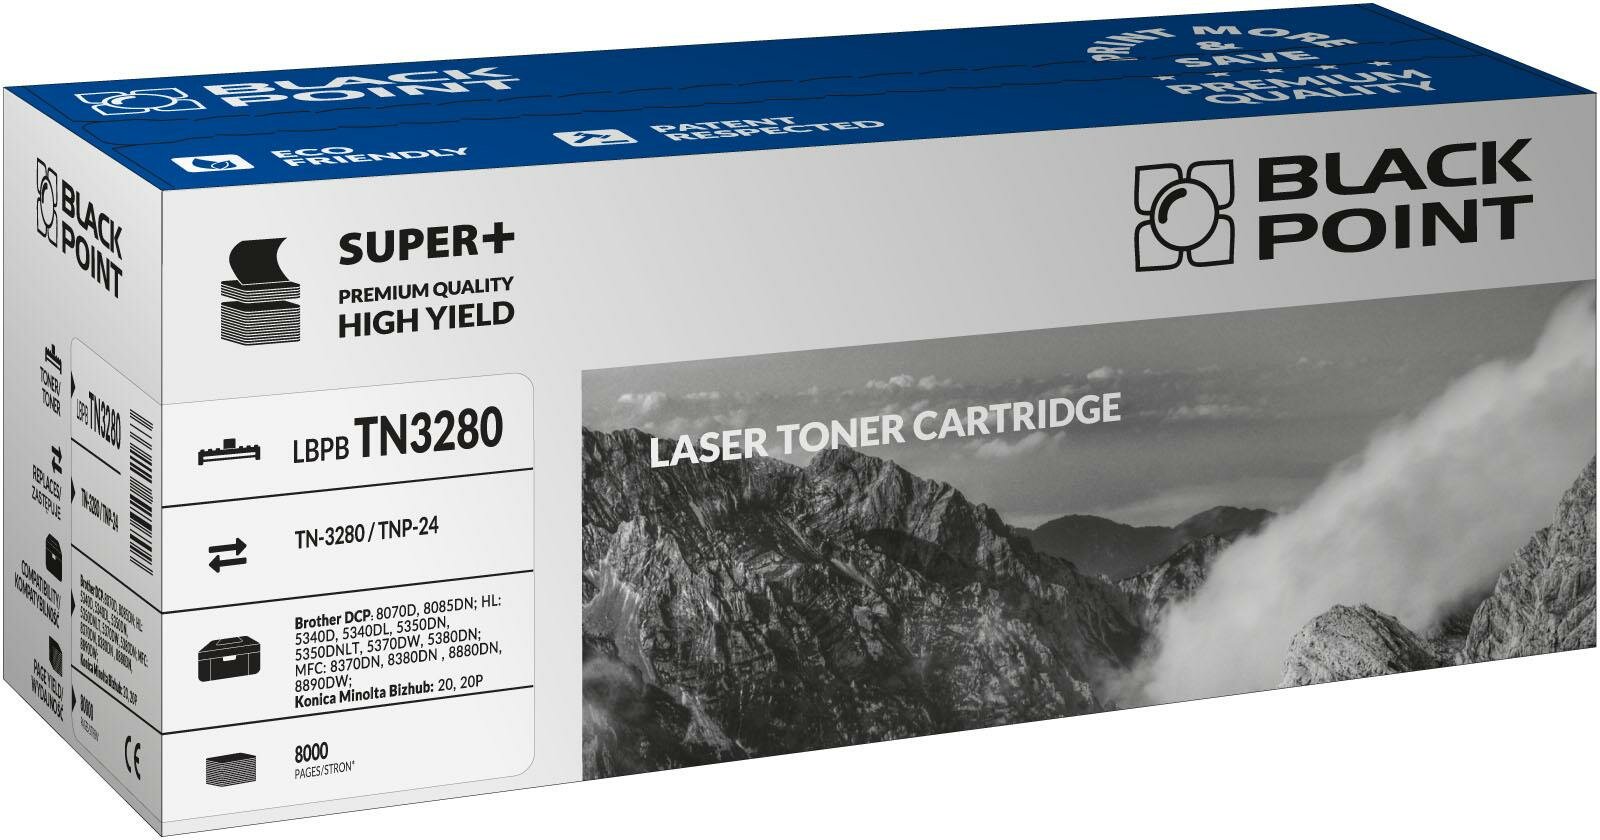 Toner laserowy Tone Black Point S+ (Brother TN-3280) widokna opakownie przodem